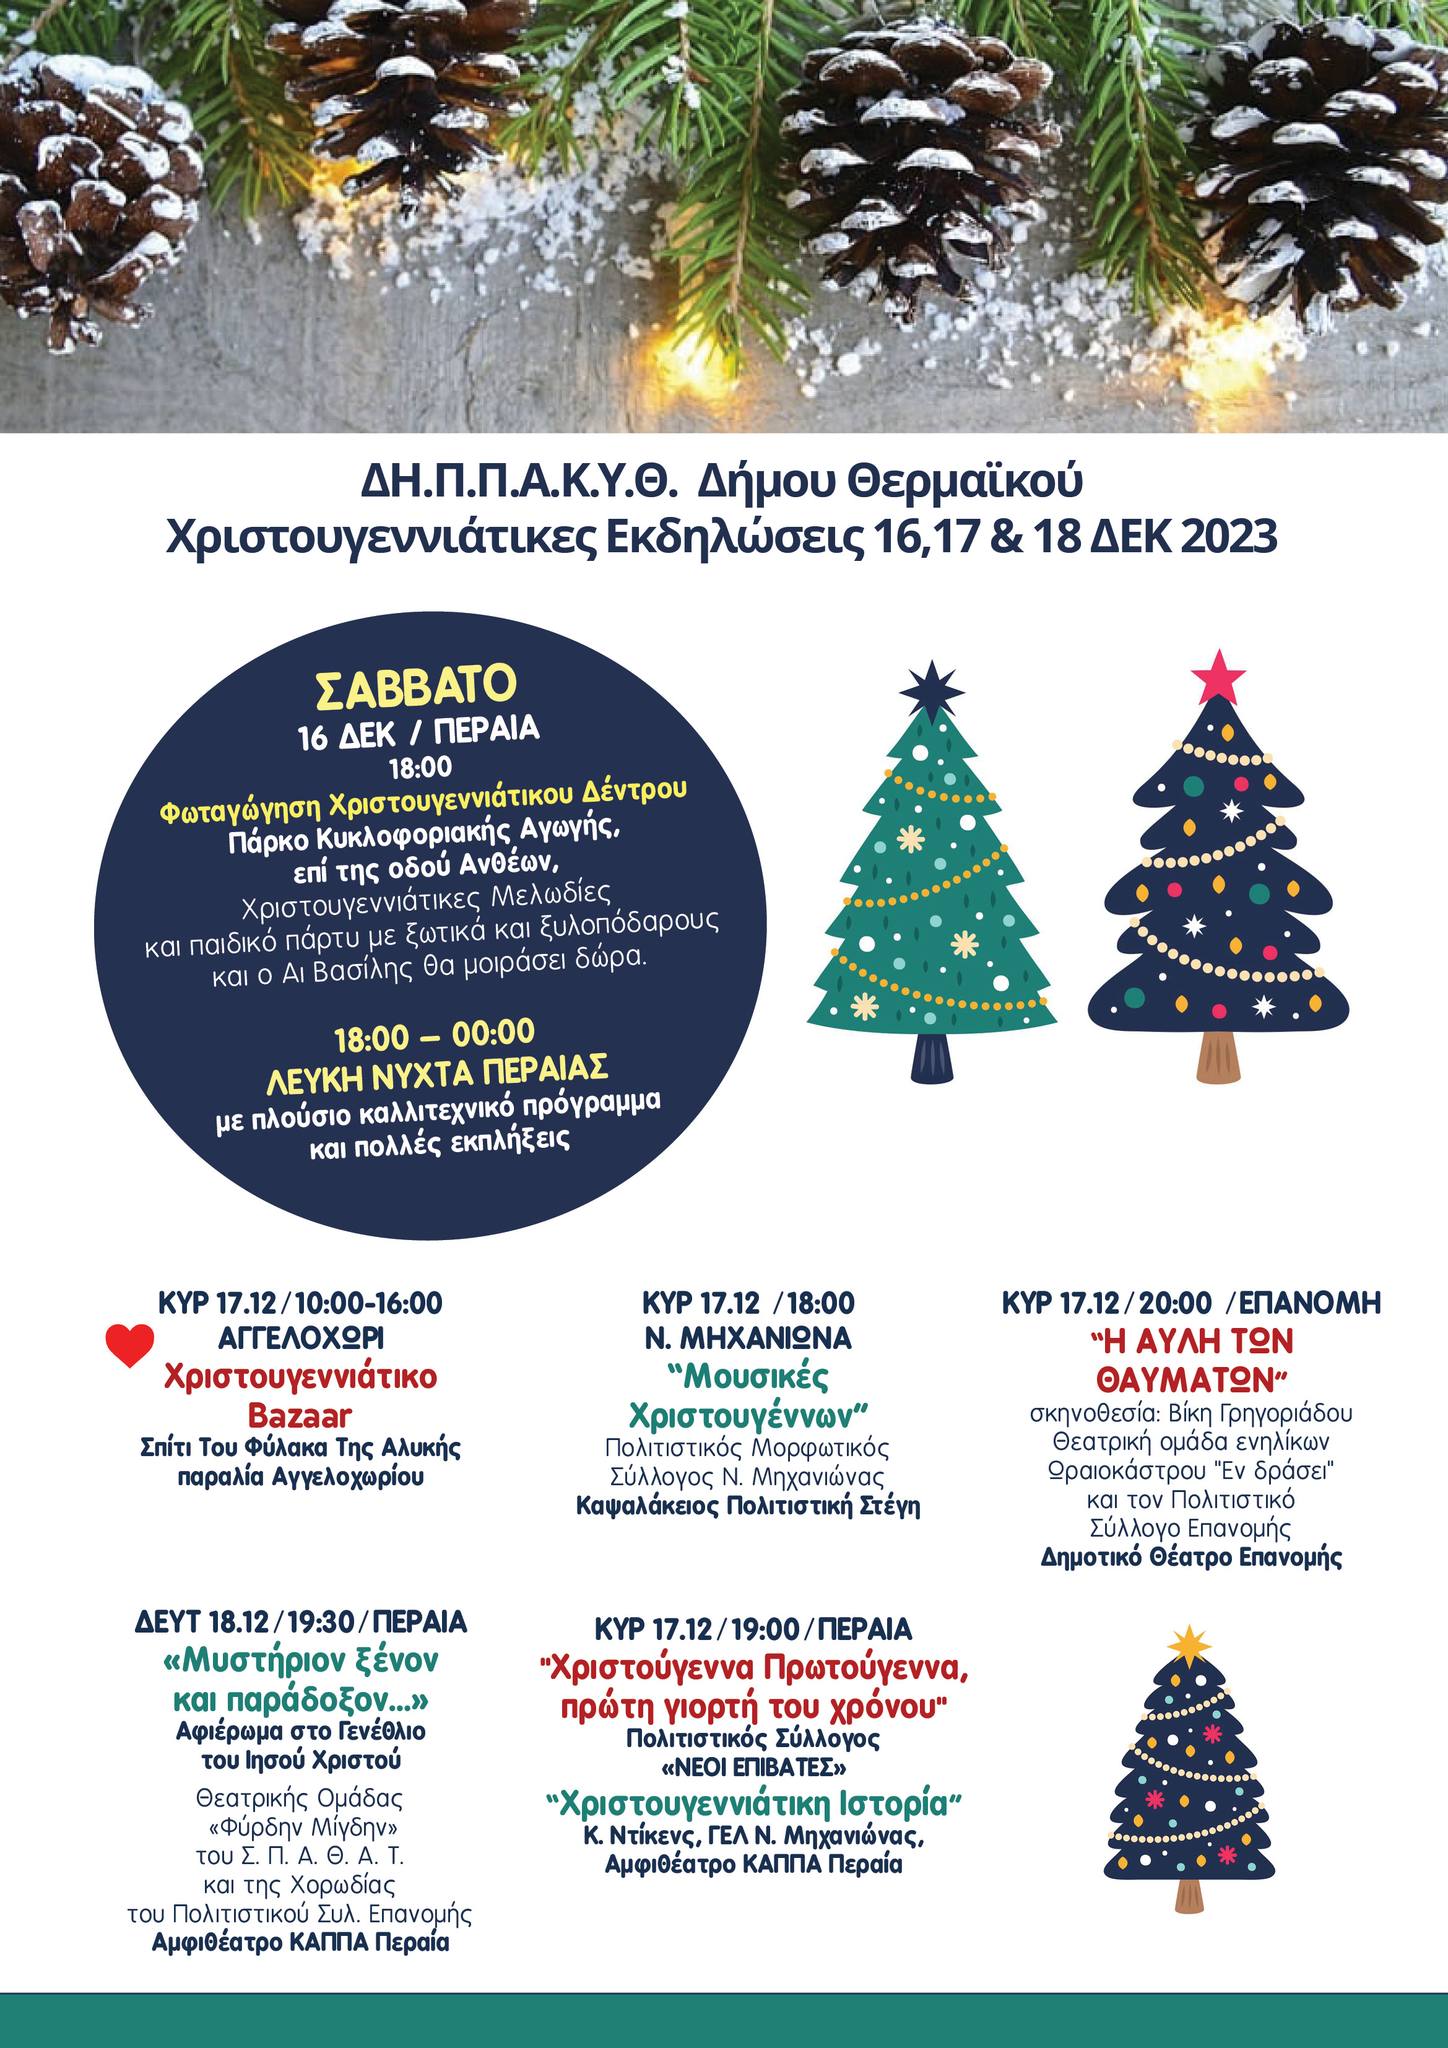 Αυτό το Σαββατοκύριακο μένουμε Θερμαϊκό για 7 Χριστουγεννιάτικες, γιορτινές εκδηλώσεις!!!